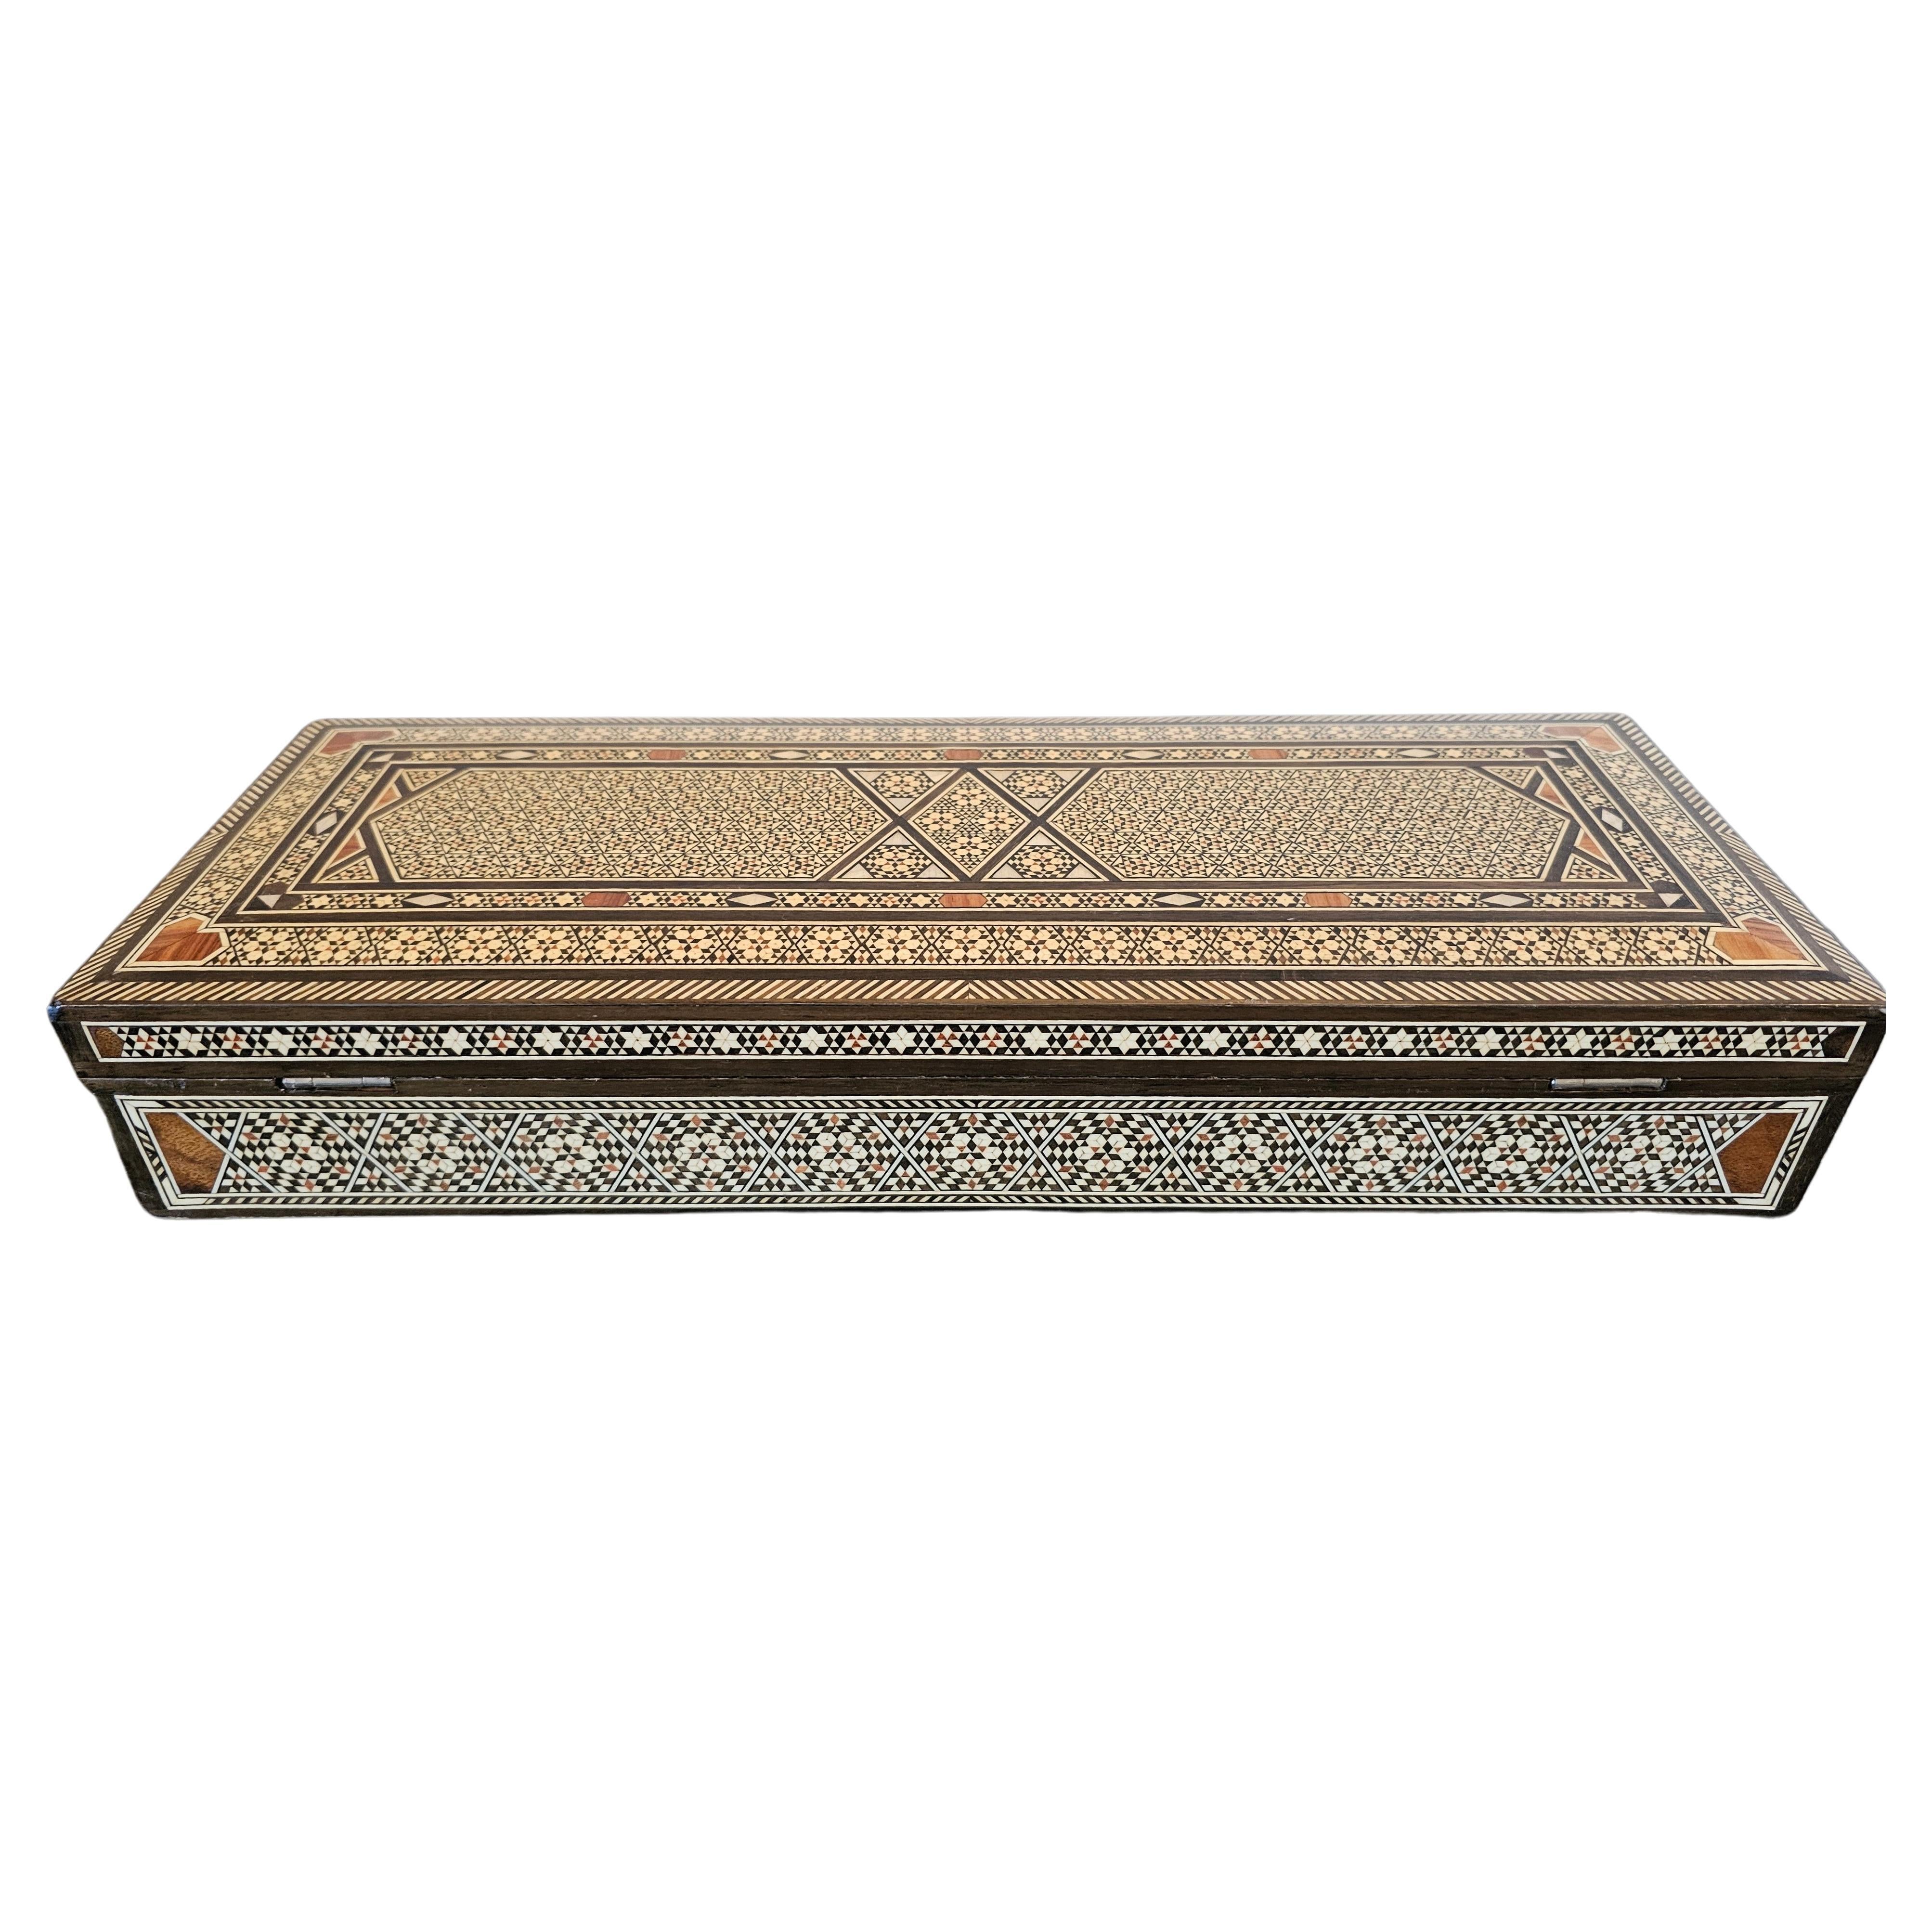 Eine atemberaubende Vintage maurischen Arabeske Intarsien Tischkasten, 20. Jahrhundert, hochwertige rechteckige Box mit Scharnierdeckel, mit kontrastierenden Perlmutt, exotischen Hartholz und Knochen Intarsien in geometrischen Mustern angeordnet,